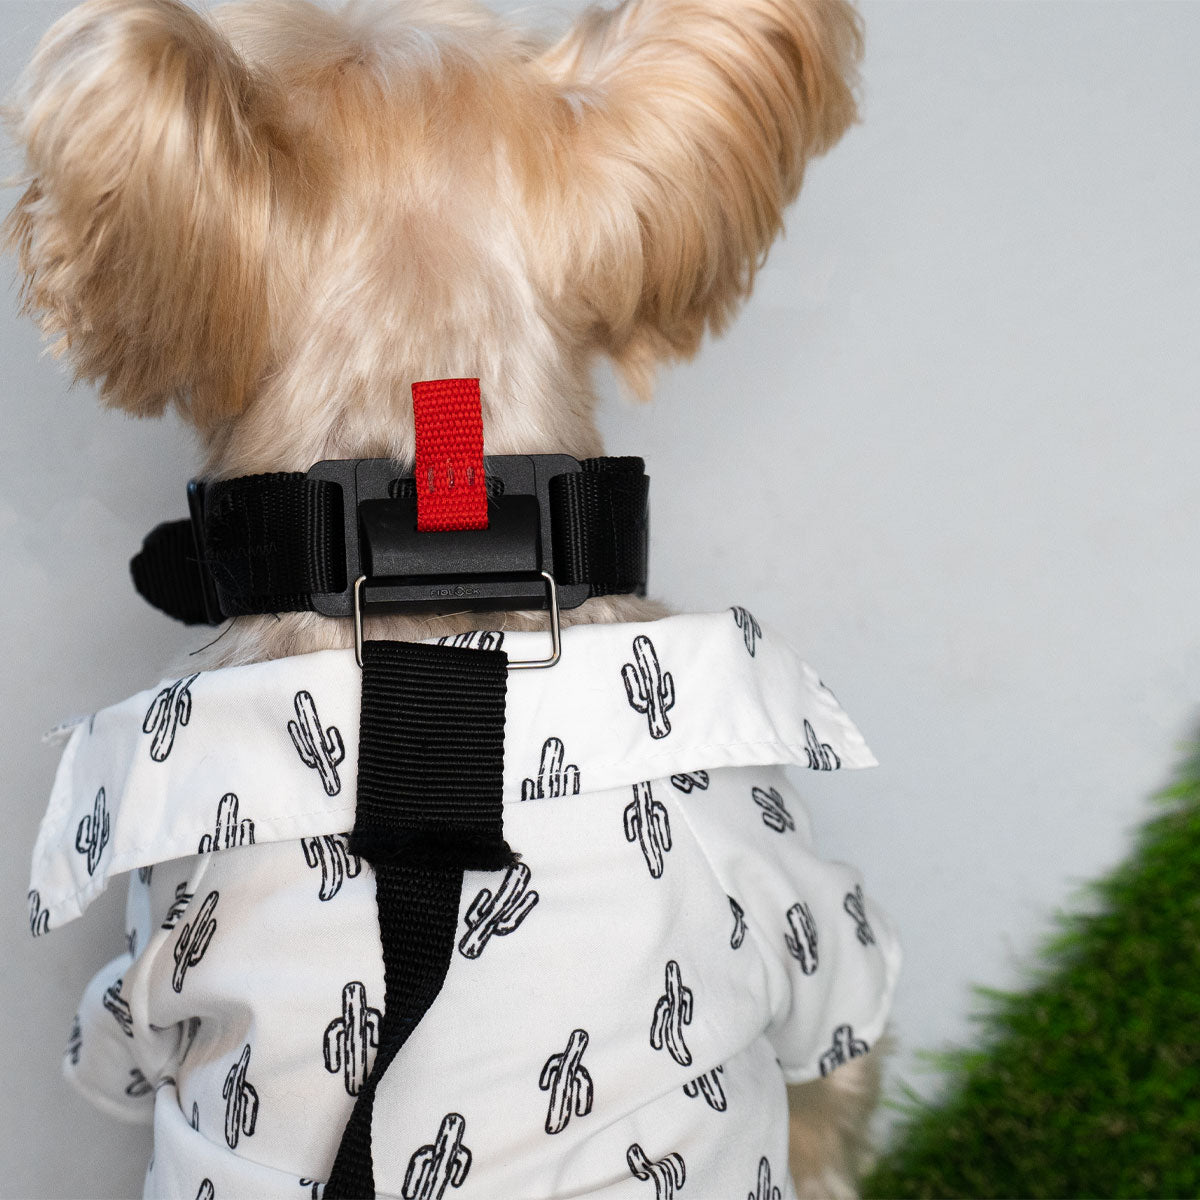 Adjustable Magnetic Dog Collar & Leash - MYCLEVERLIFE